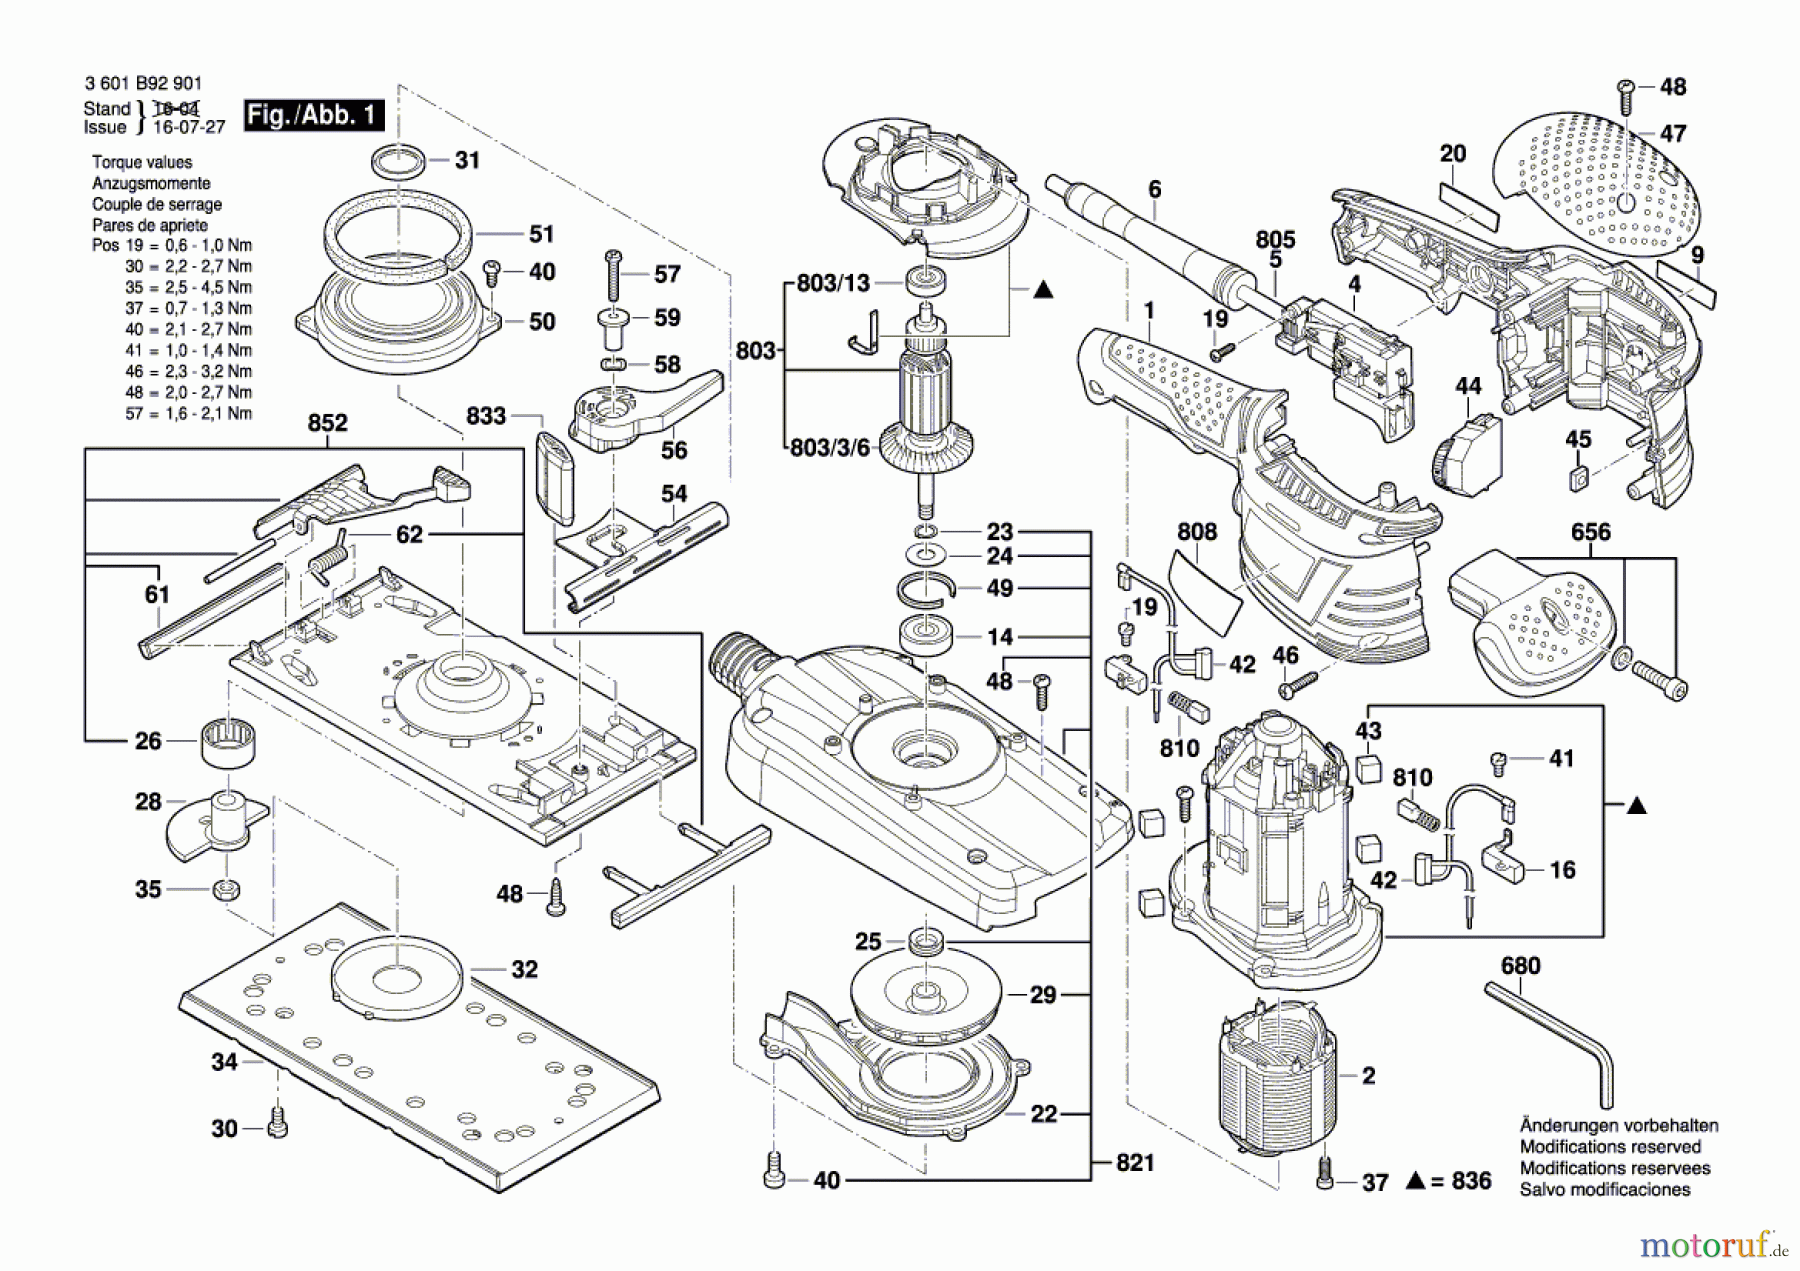  Bosch Werkzeug Schwingschleifer GSS 280 AVE Seite 1